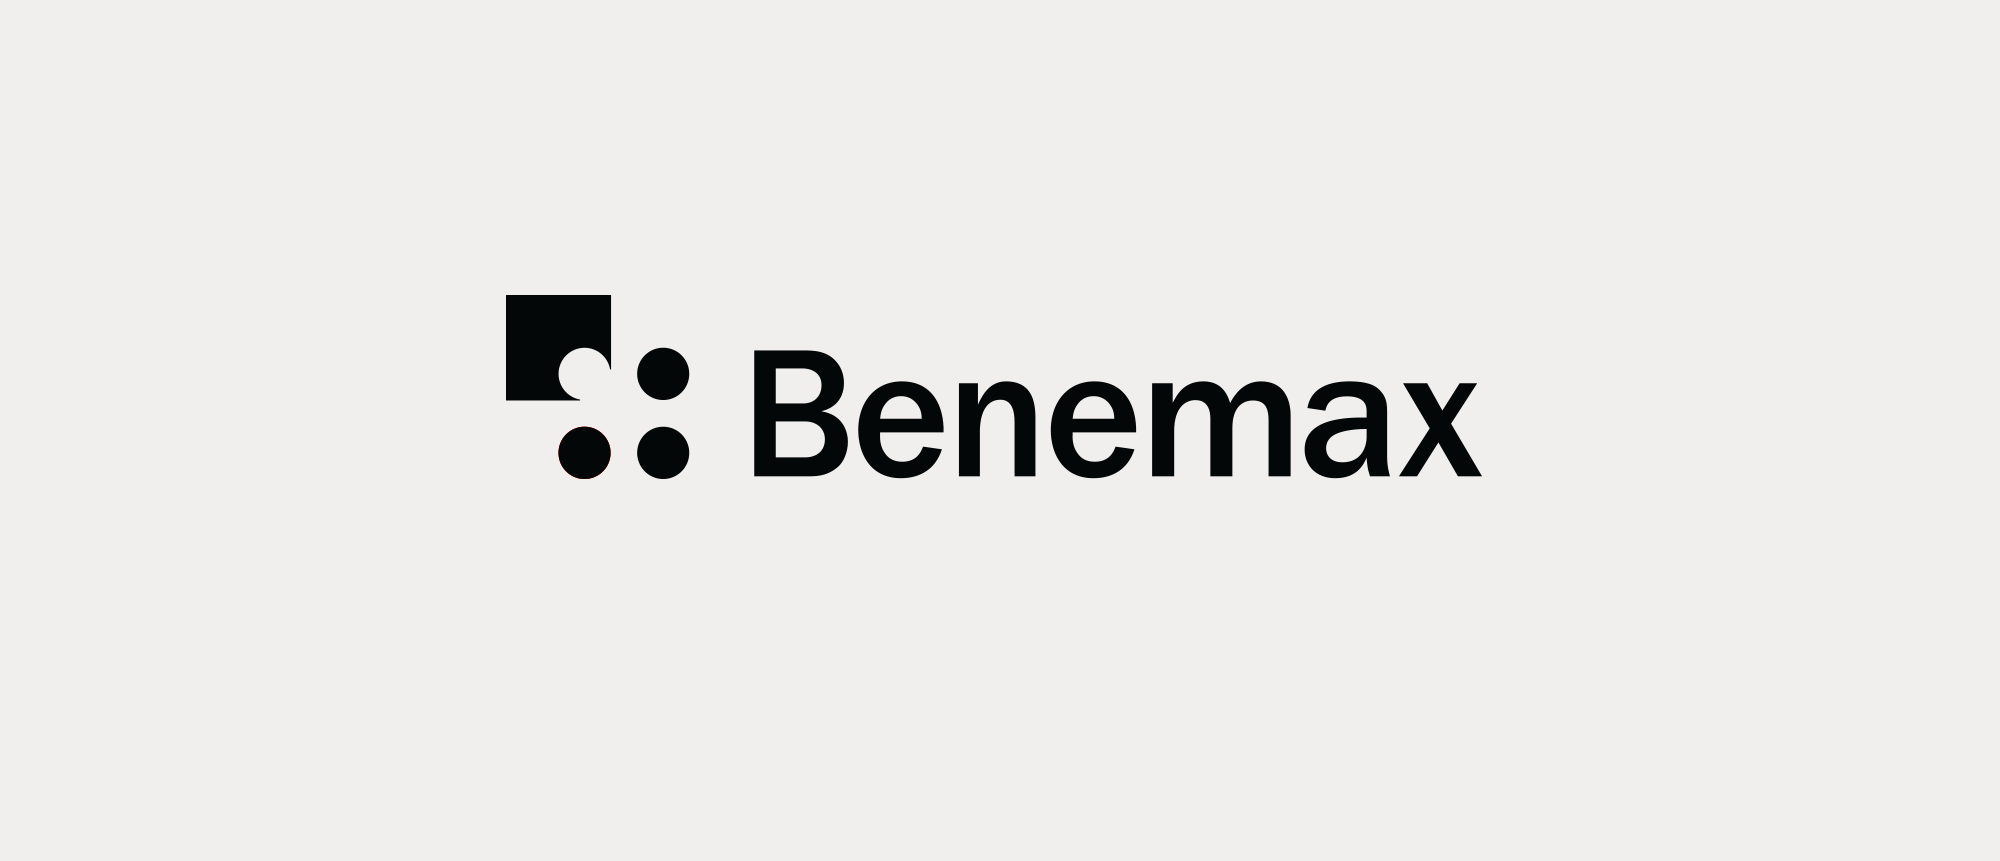 Benemax - Identity